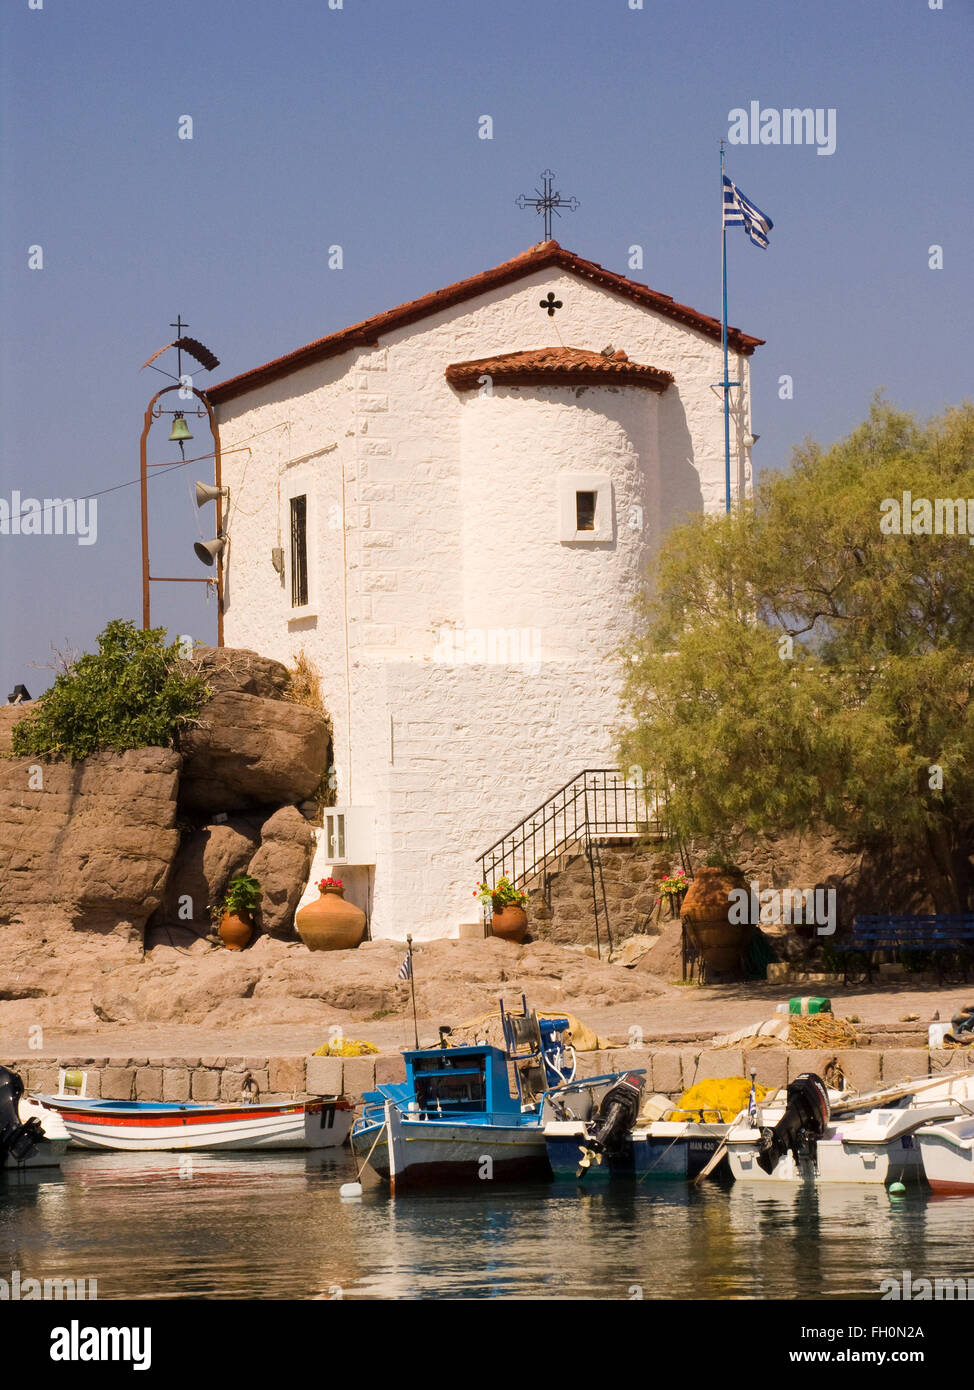 Église, sykamineas skala, l'île de Lesbos, au nord-ouest de la mer Égée, Grèce, Europe Banque D'Images